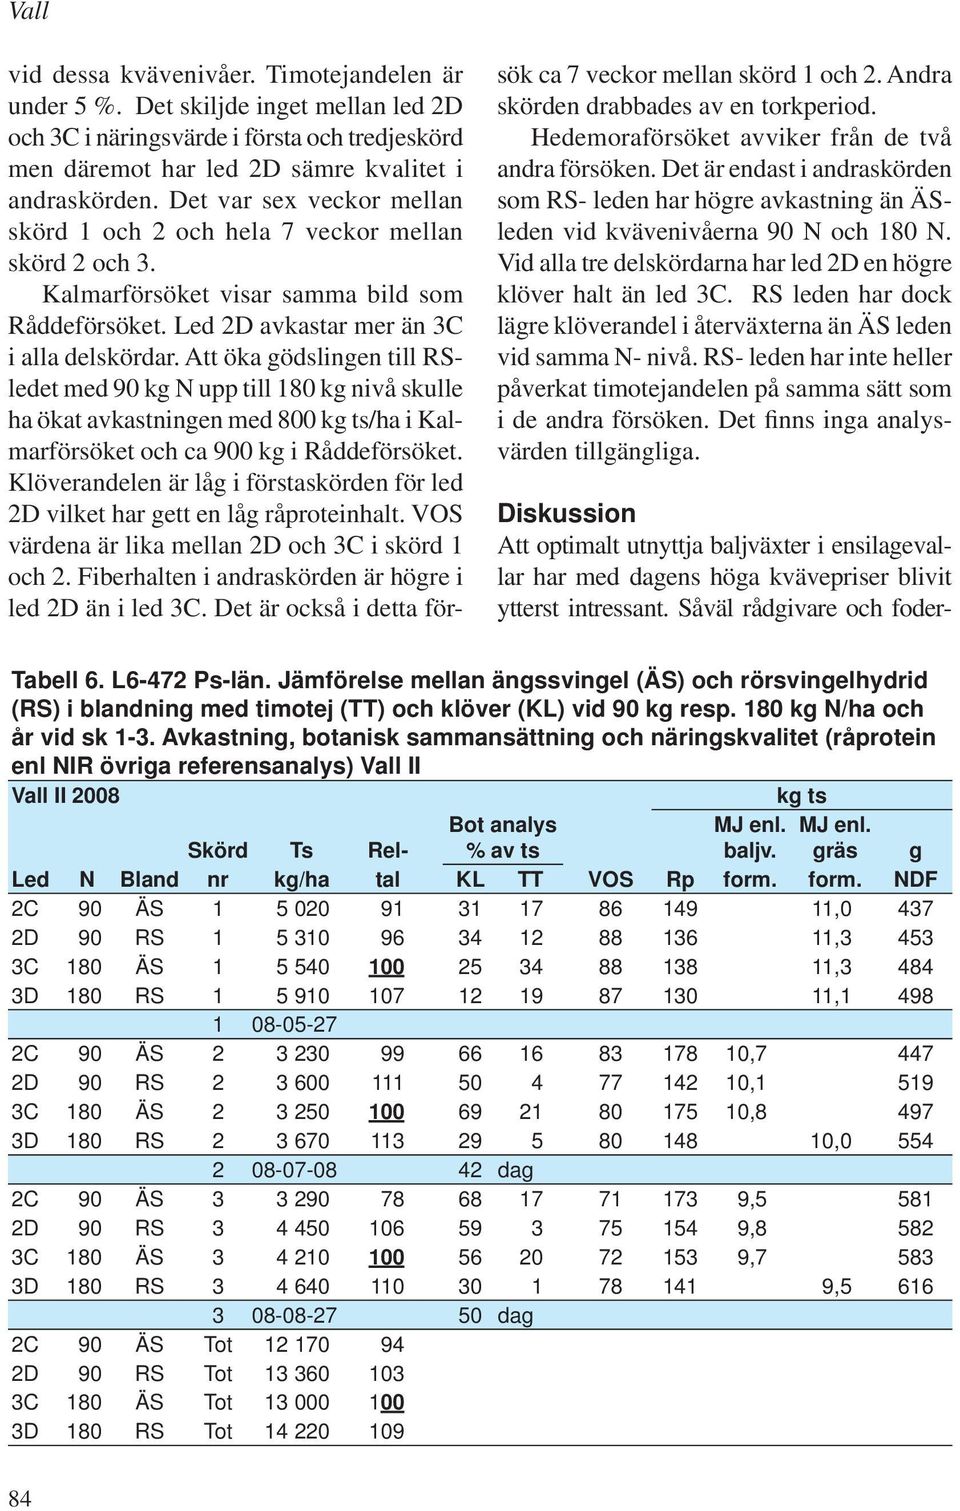 Att öka gödslingen till RSledet med 90 kg N upp till 180 kg nivå skulle ha ökat avkastningen med 800 kg ts/ha i Kalmarförsöket och ca 900 kg i Råddeförsöket.